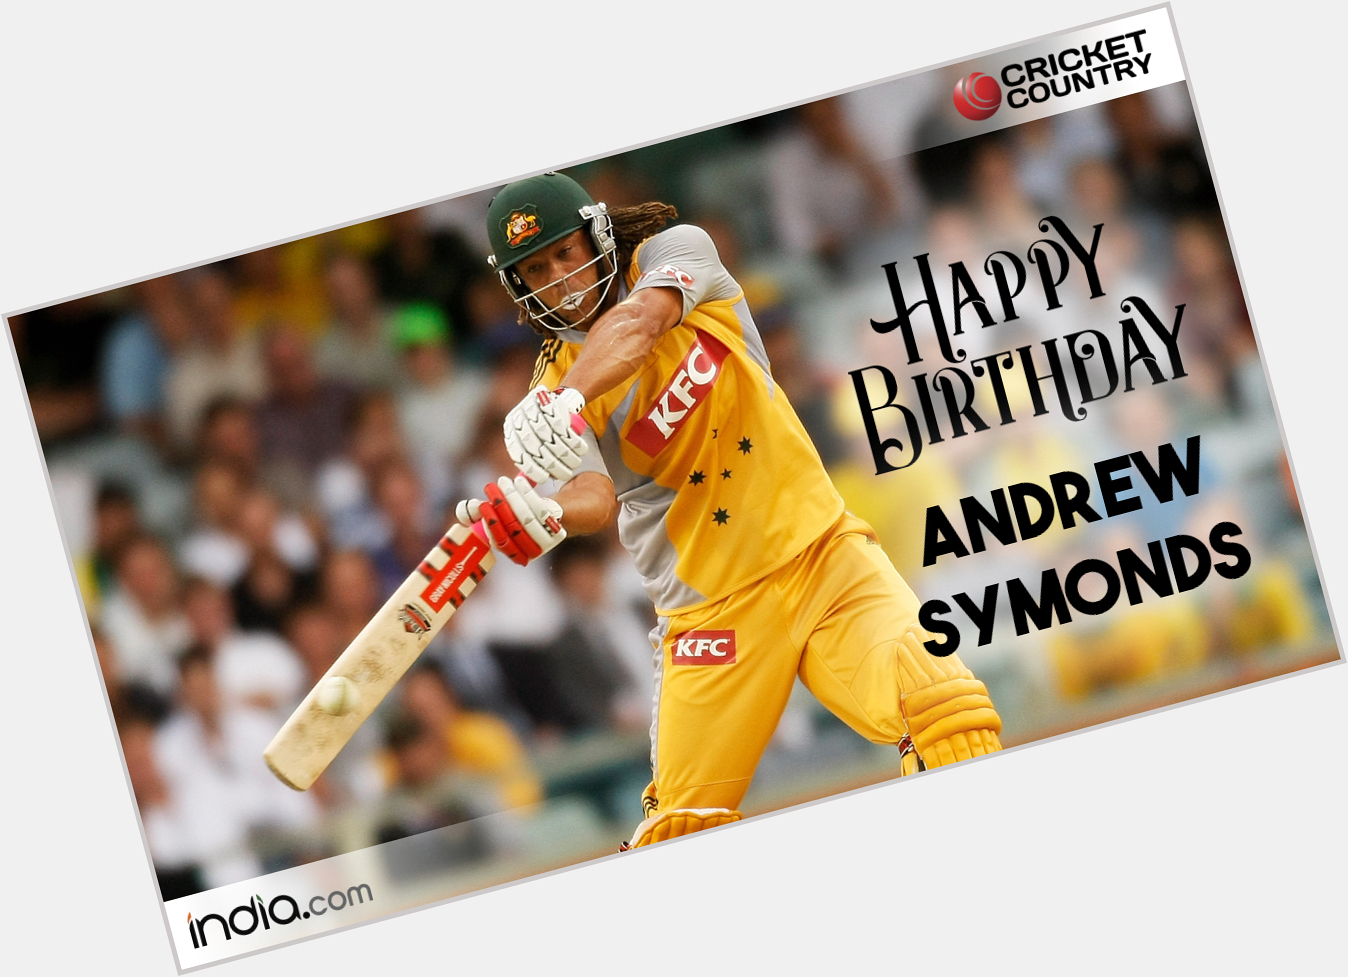 Happy Birthday Andrew Symonds!
.    